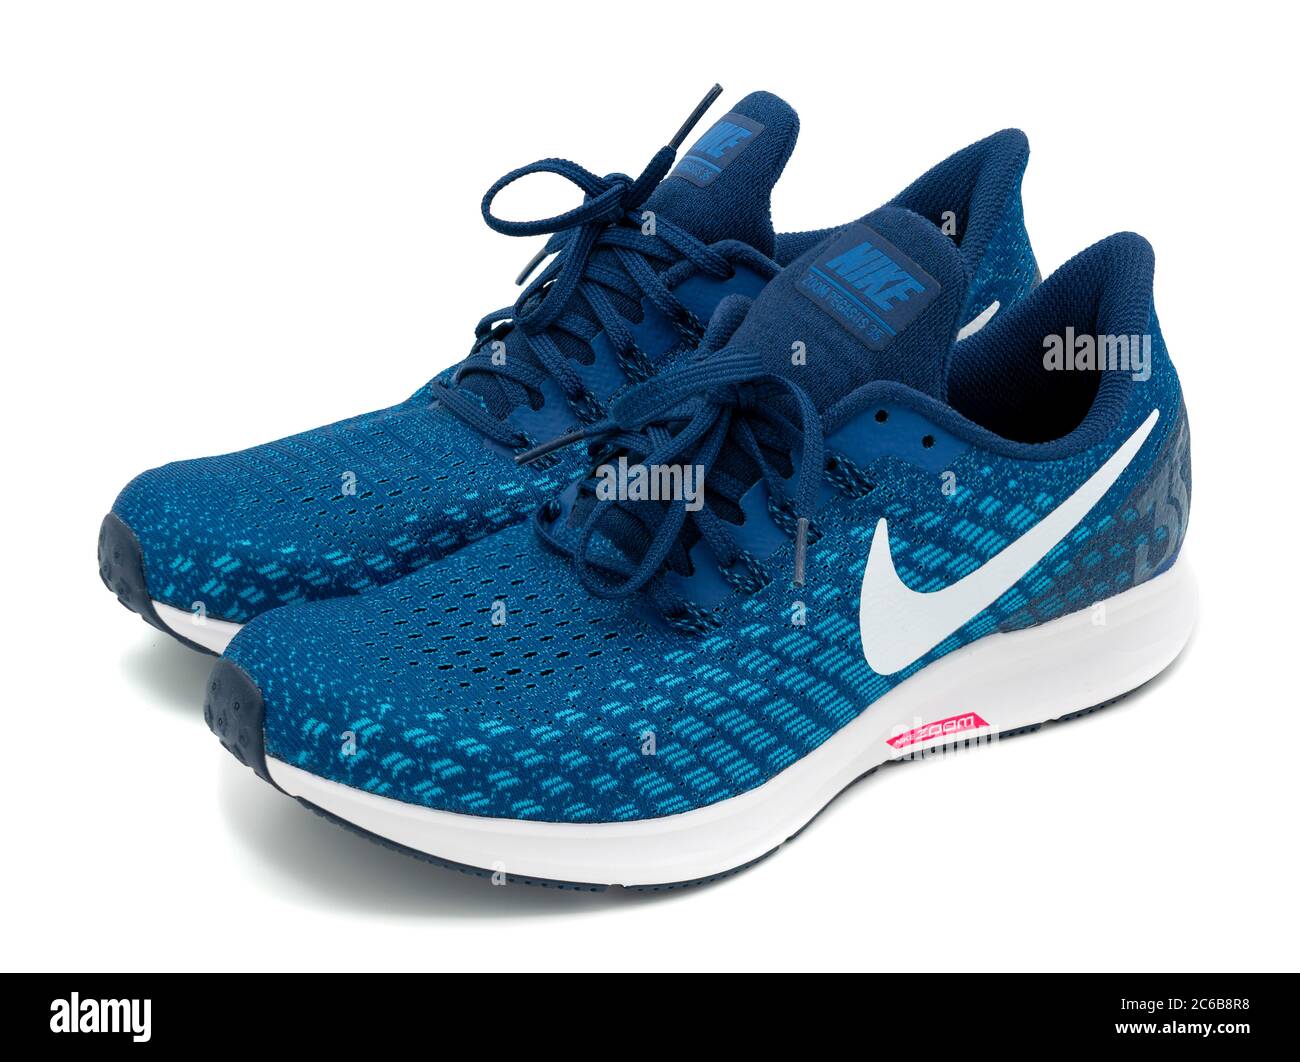 Dos zapatillas de running Nike Pegasus 35 azules blancas Fotografía de stock -